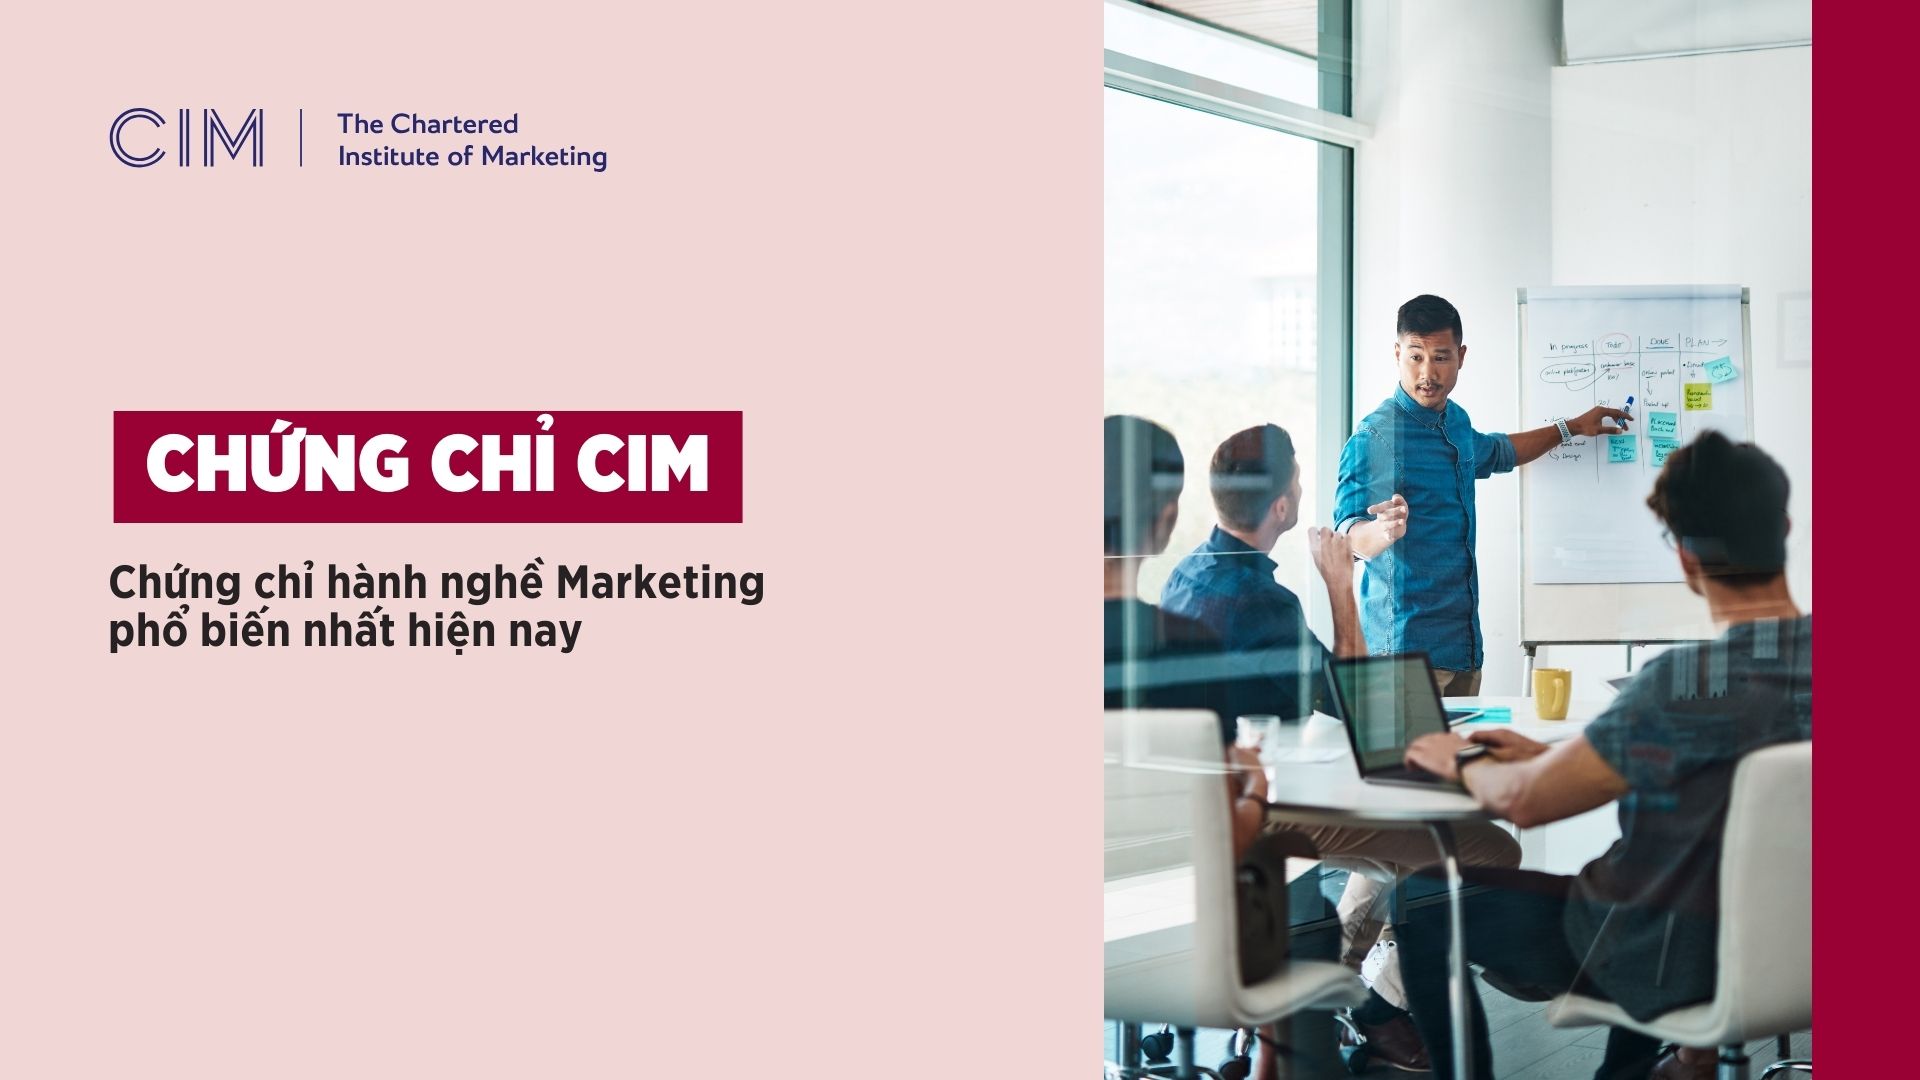 Chứng chỉ CIM được xem là chứng chỉ hành nghề Marketing phổ biến nhất hiện nay